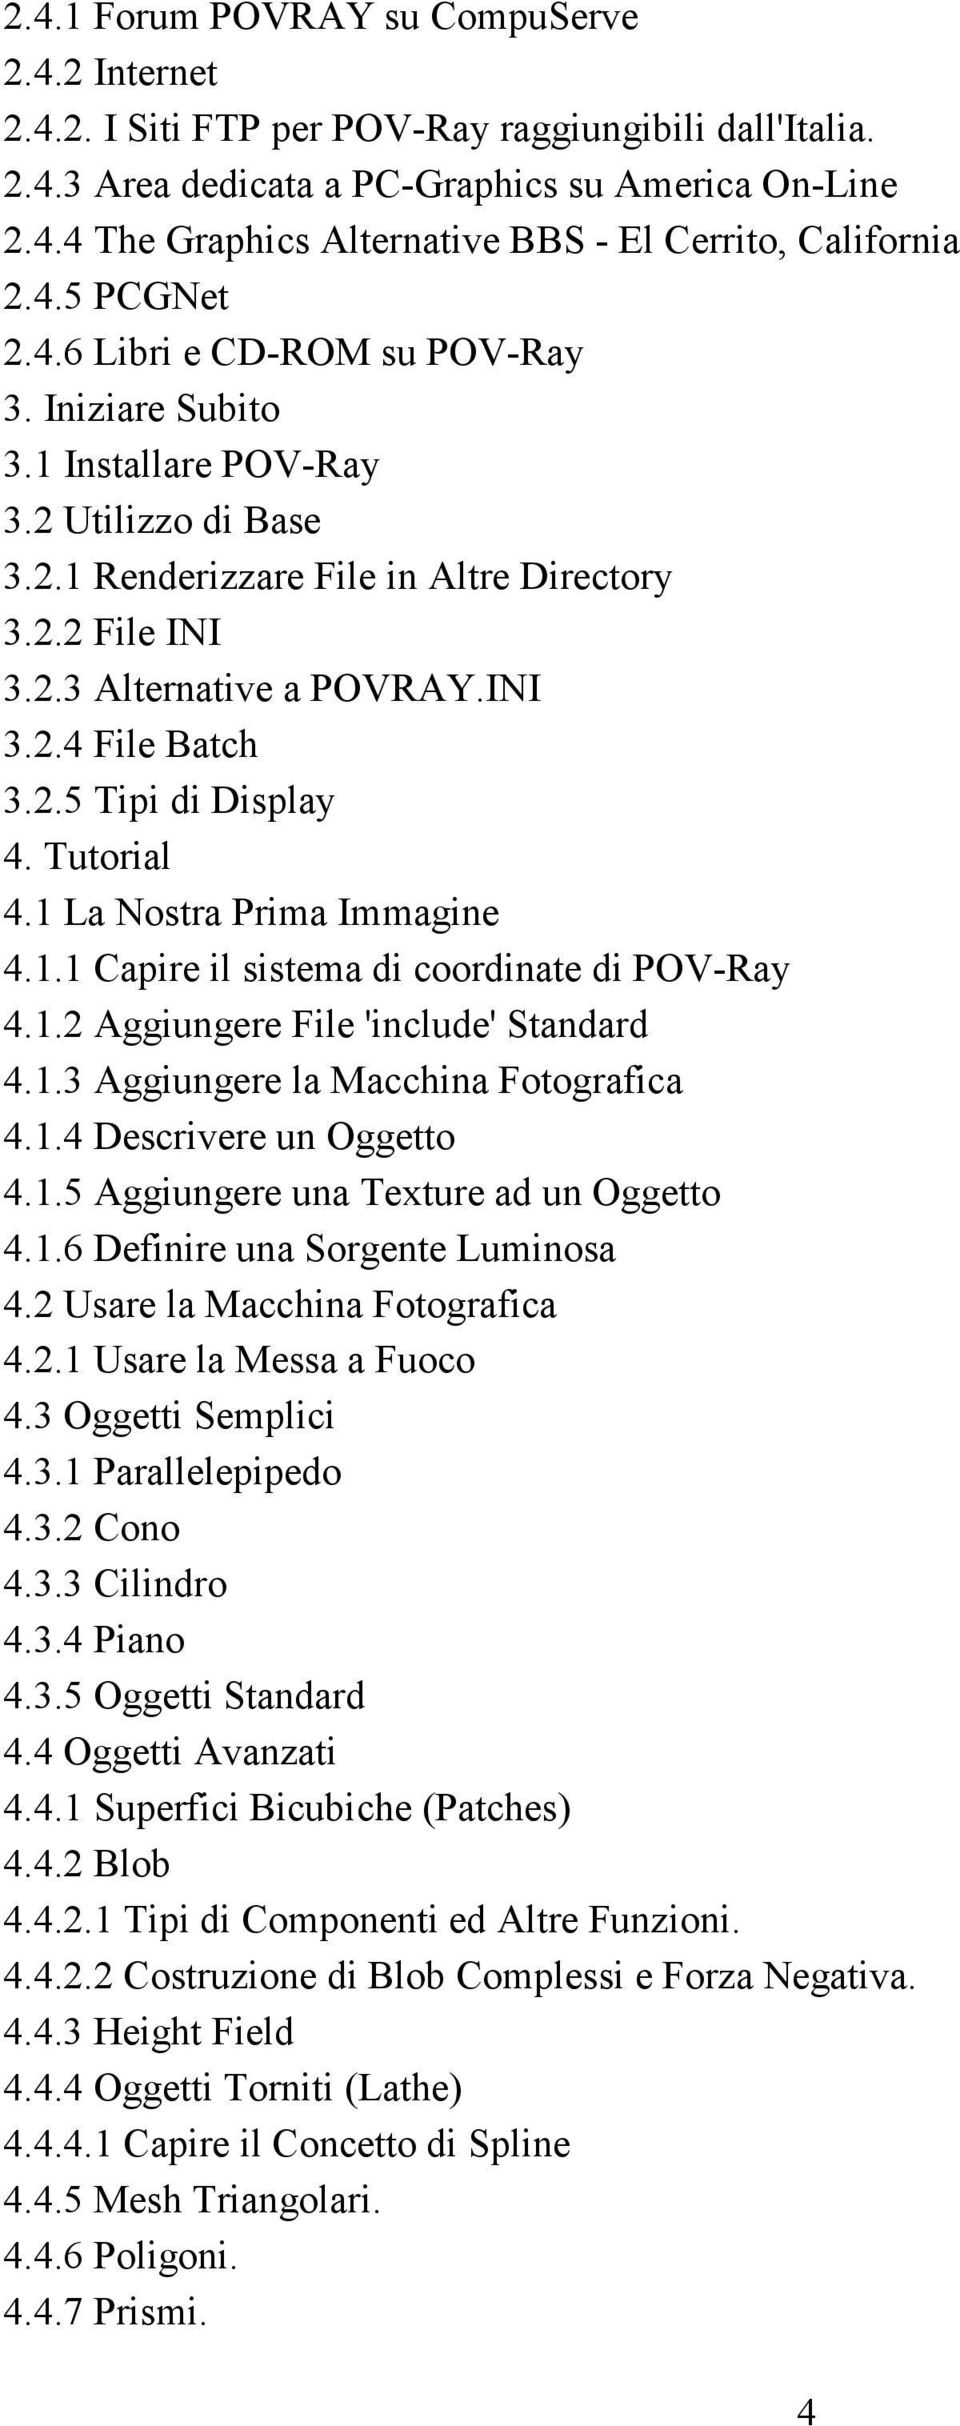 2.5 Tipi di Display 4. Tutorial 4.1 La Nostra Prima Immagine 4.1.1 Capire il sistema di coordinate di POV-Ray 4.1.2 Aggiungere File 'include' Standard 4.1.3 Aggiungere la Macchina Fotografica 4.1.4 Descrivere un Oggetto 4.